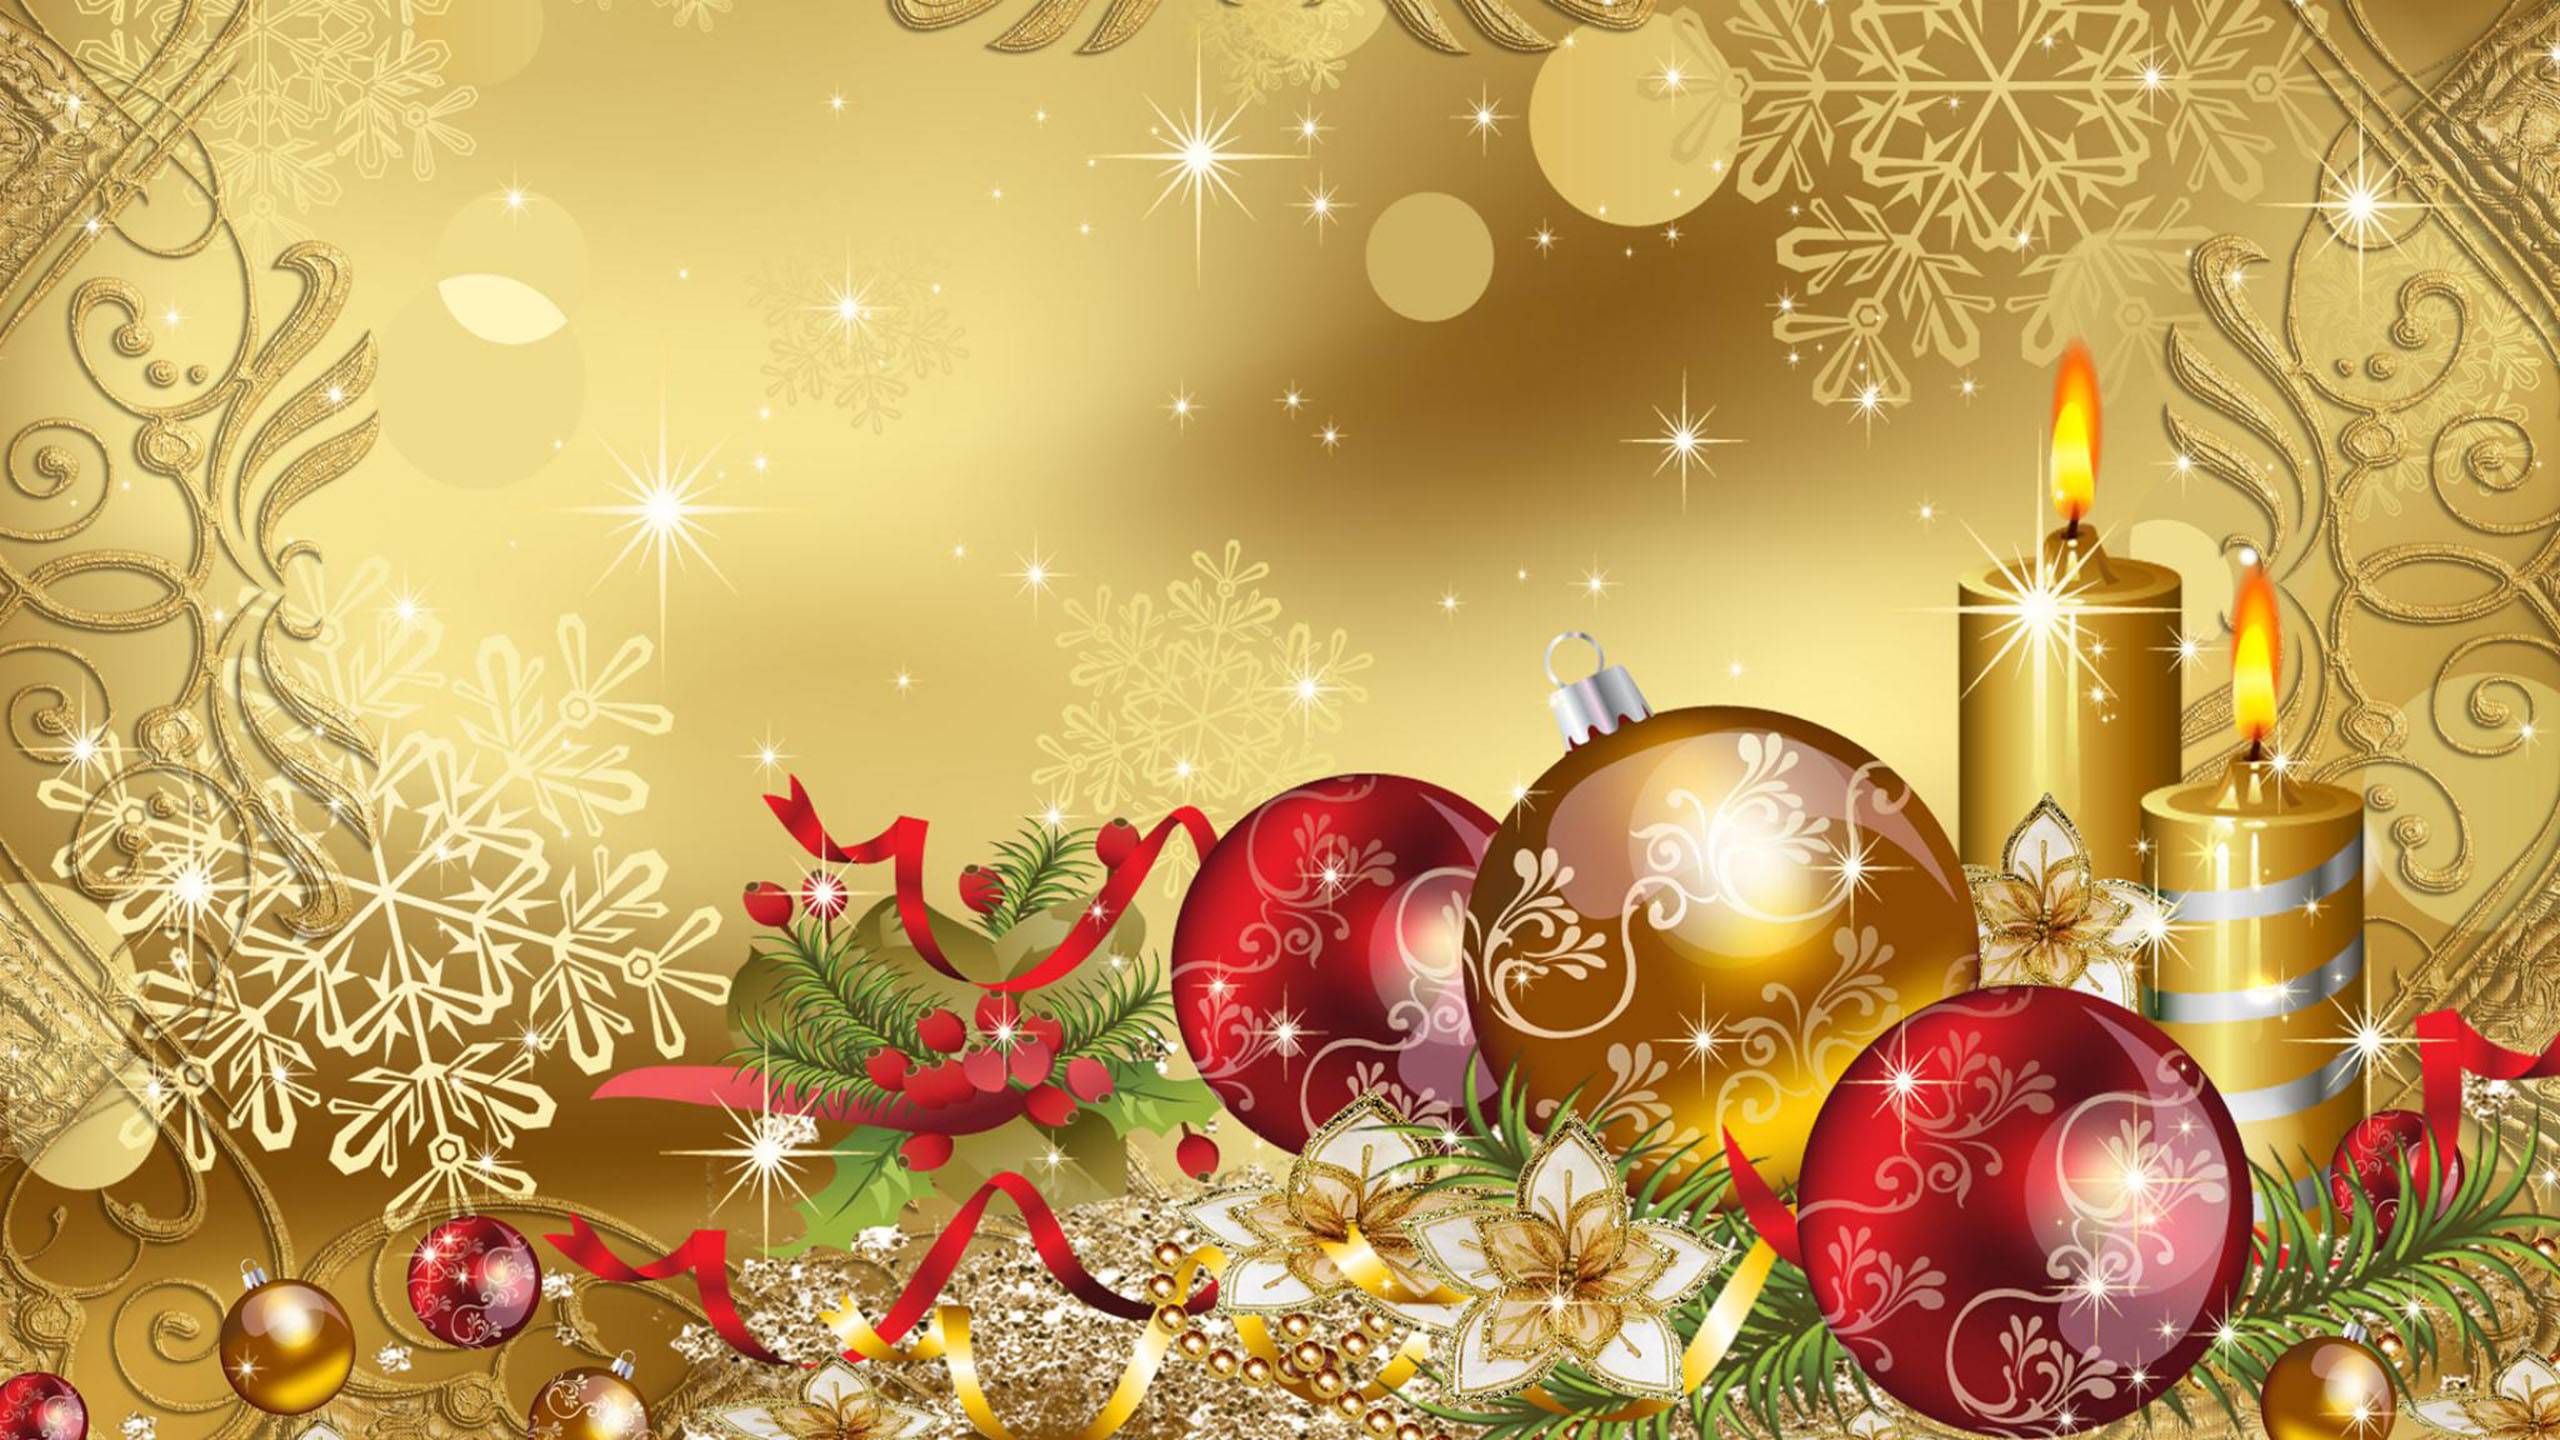 Merry Christmas Gold Wallpaper Hd For Desktop 2560x1440 : 